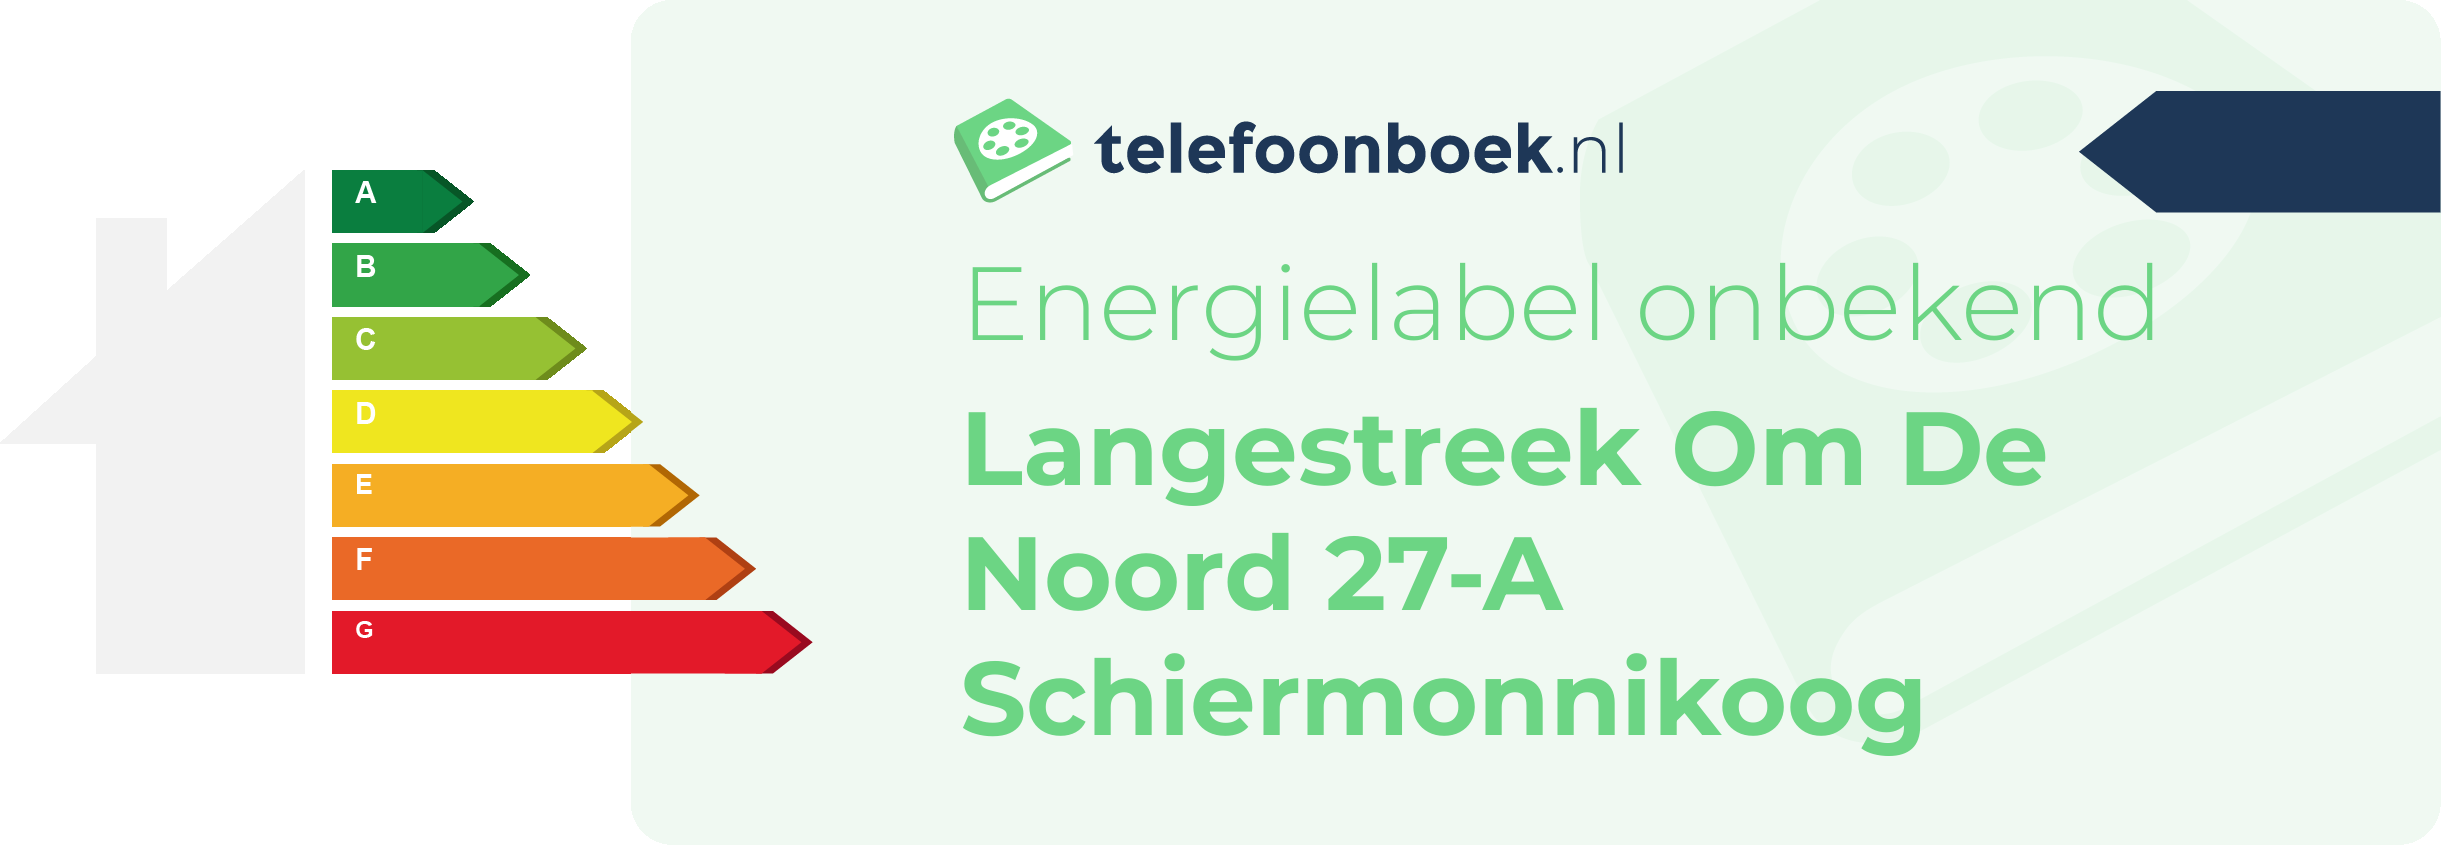 Energielabel Langestreek Om De Noord 27-A Schiermonnikoog